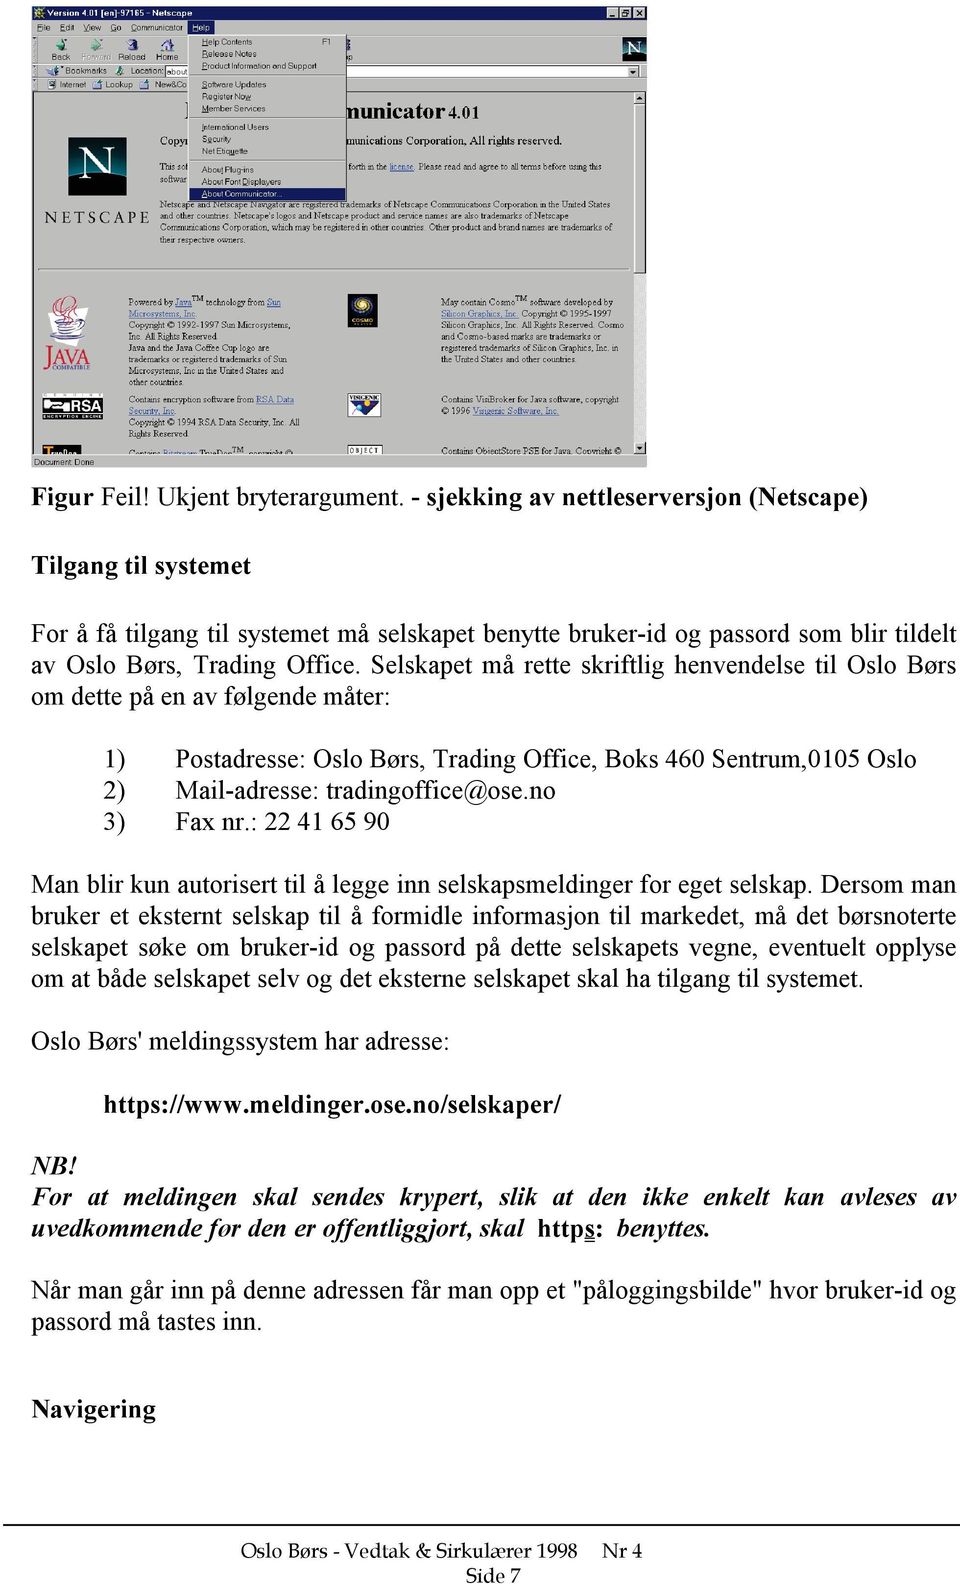 Selskapet må rette skriftlig henvendelse til Oslo Børs om dette på en av følgende måter: 1) Postadresse: Oslo Børs, Trading Office, Boks 460 Sentrum,0105 Oslo 2) Mail-adresse: tradingoffice@ose.